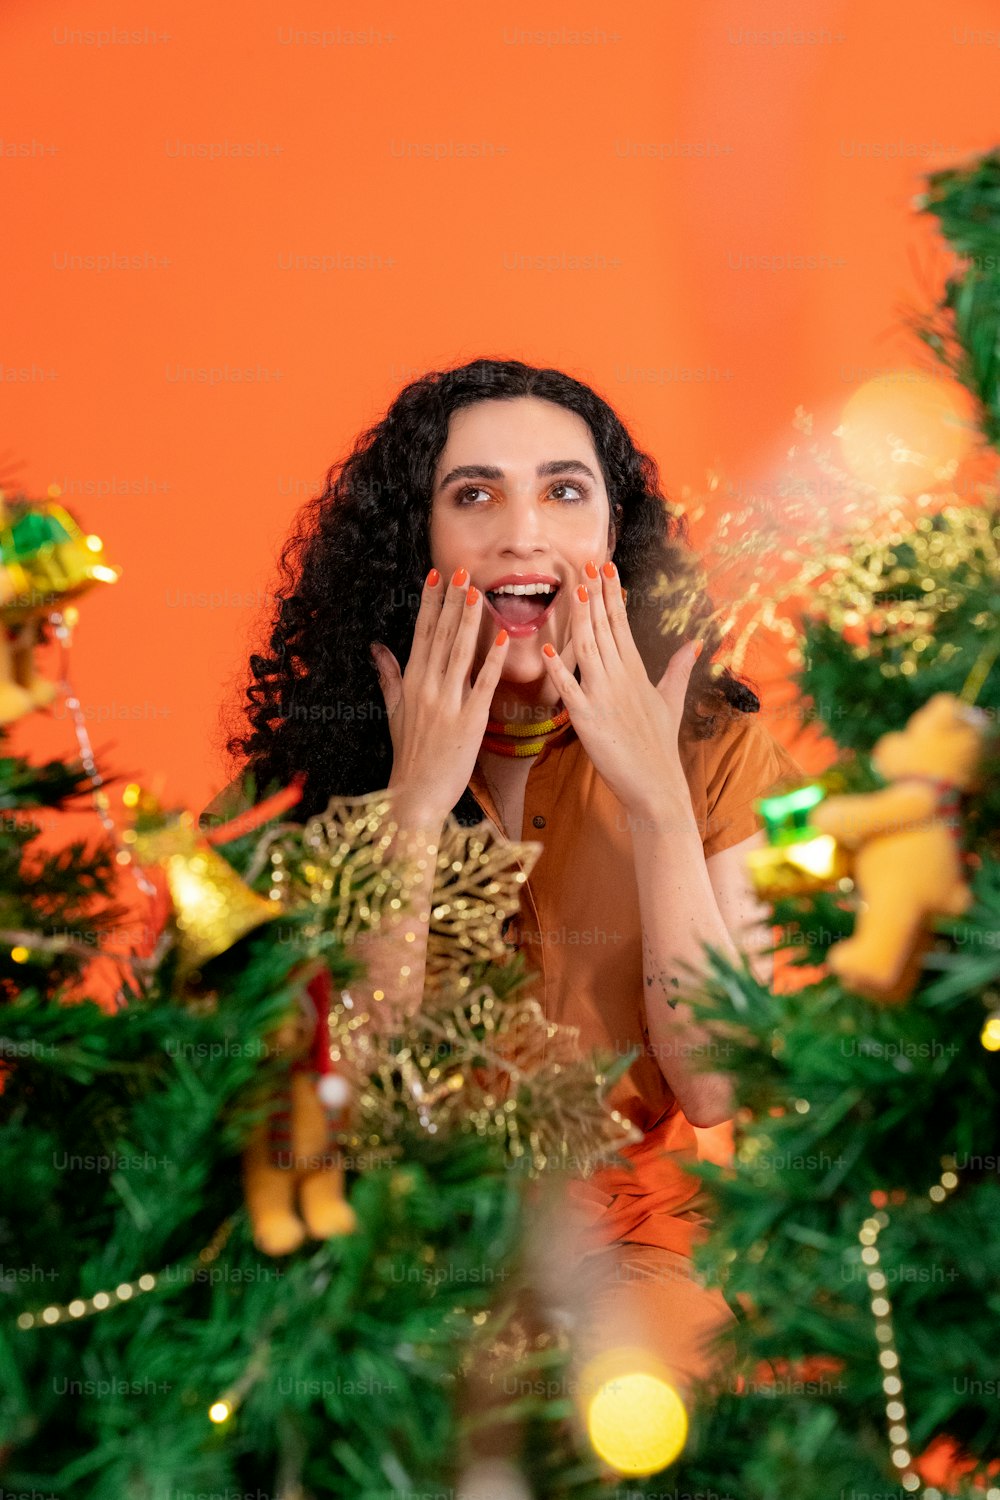 Une personne avec les mains sur le visage devant un arbre de Noël